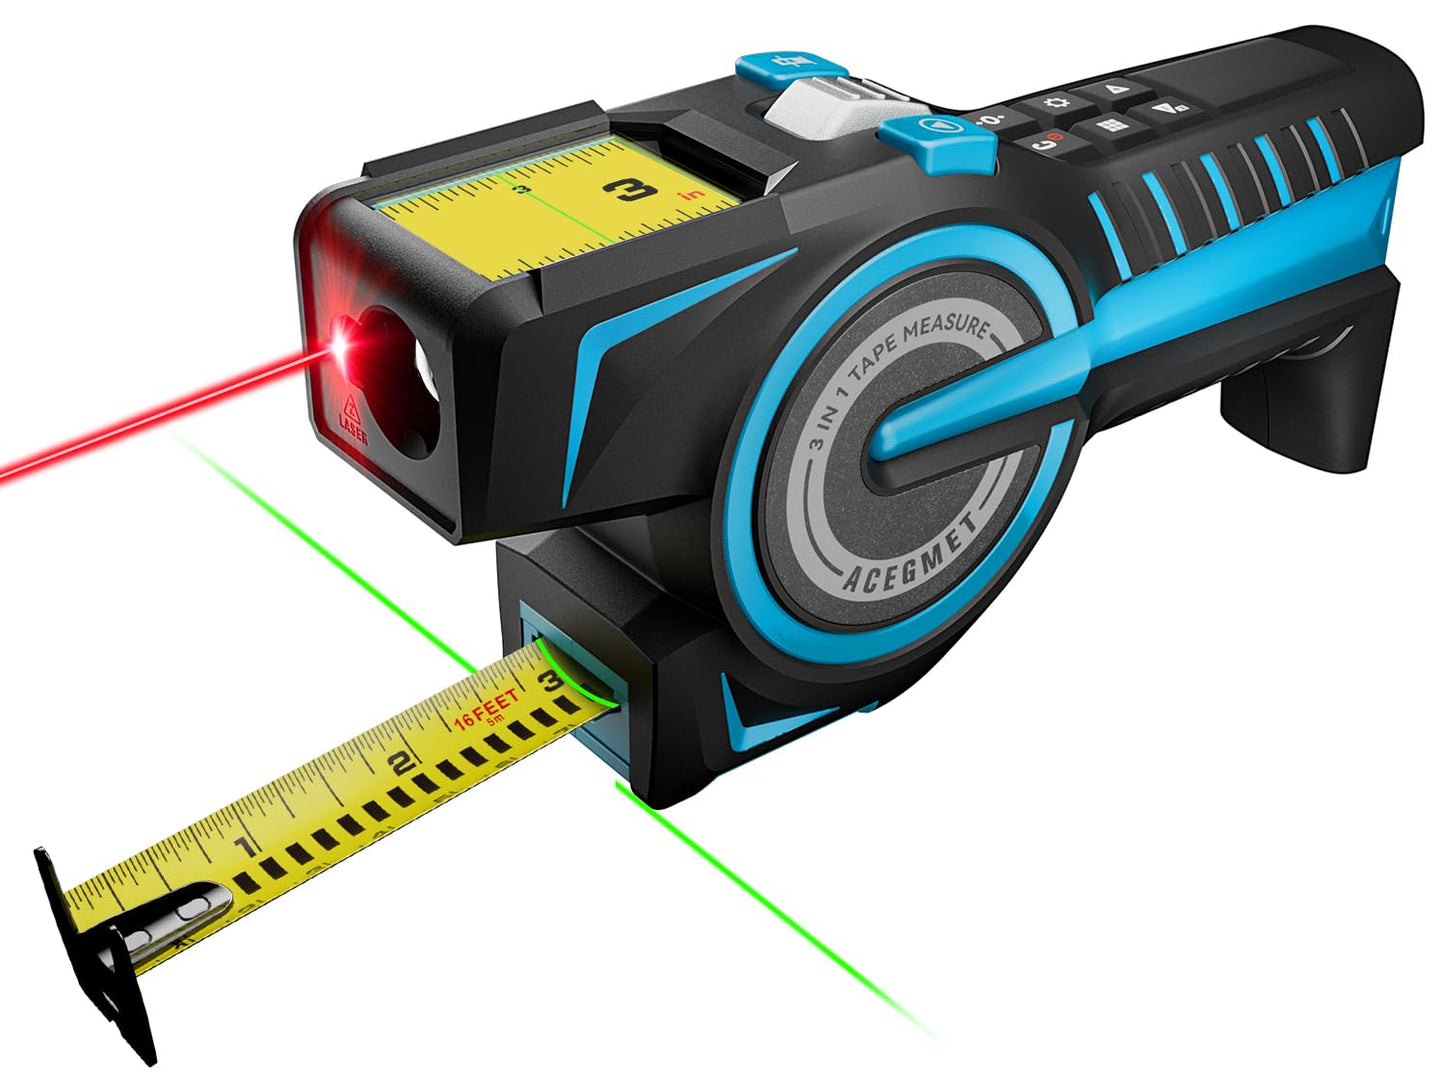  MiLESEEY - Dispositivo de medición láser, 393 pies, cinta  métrica láser digital con sensor de ángulo electrónico mejorado, precisión  de ± 0.079 in, medición de área, volumen y pitágoras, : Herramientas